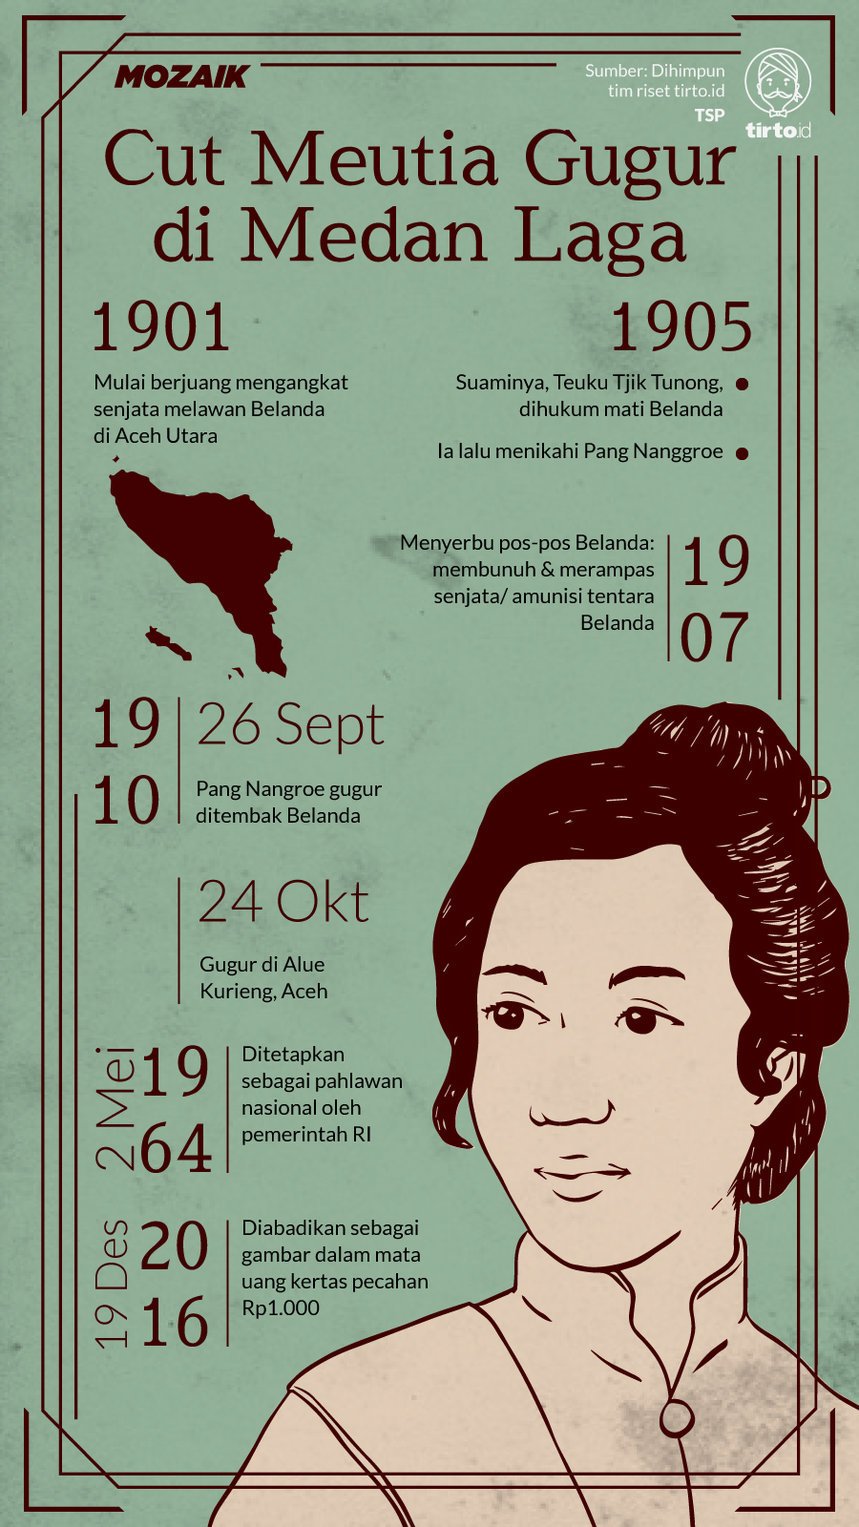 Infografik Mozaik Cut Meutia Gugur di Medan Laga